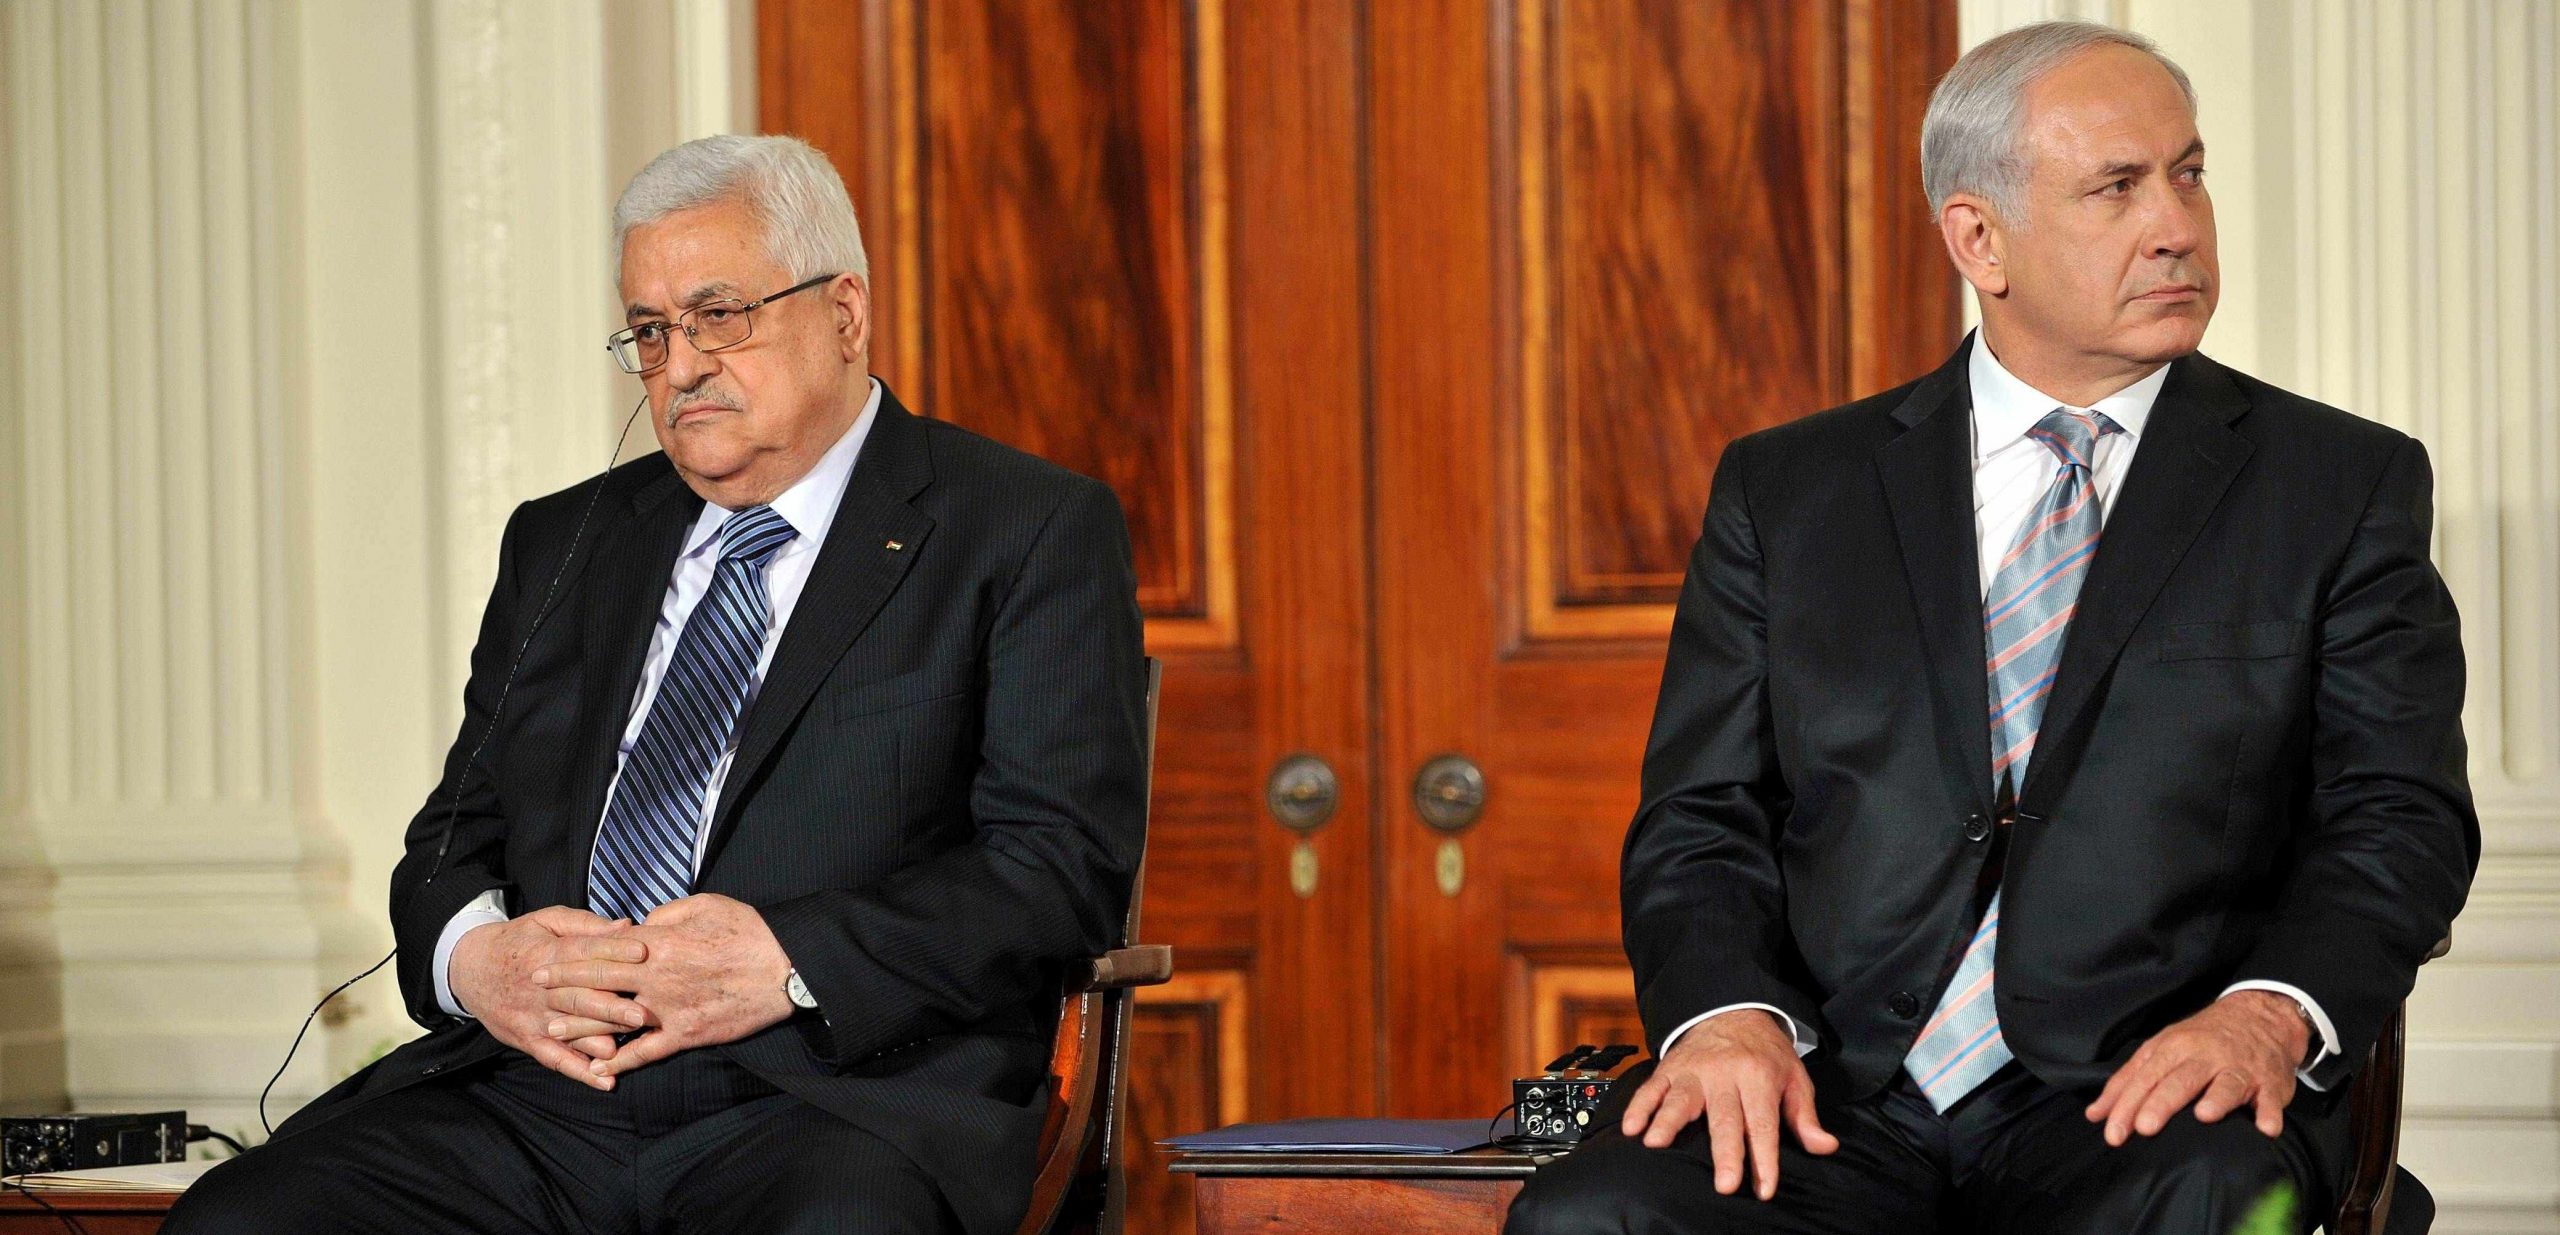 الرئيس محمود عباس: سياسات وأفعال "حماس" لا تمثل الشعب الفلسطيني ونطالب باطلاق سراح الرهائن والاسرى ونؤكد على المقاومة السلمية